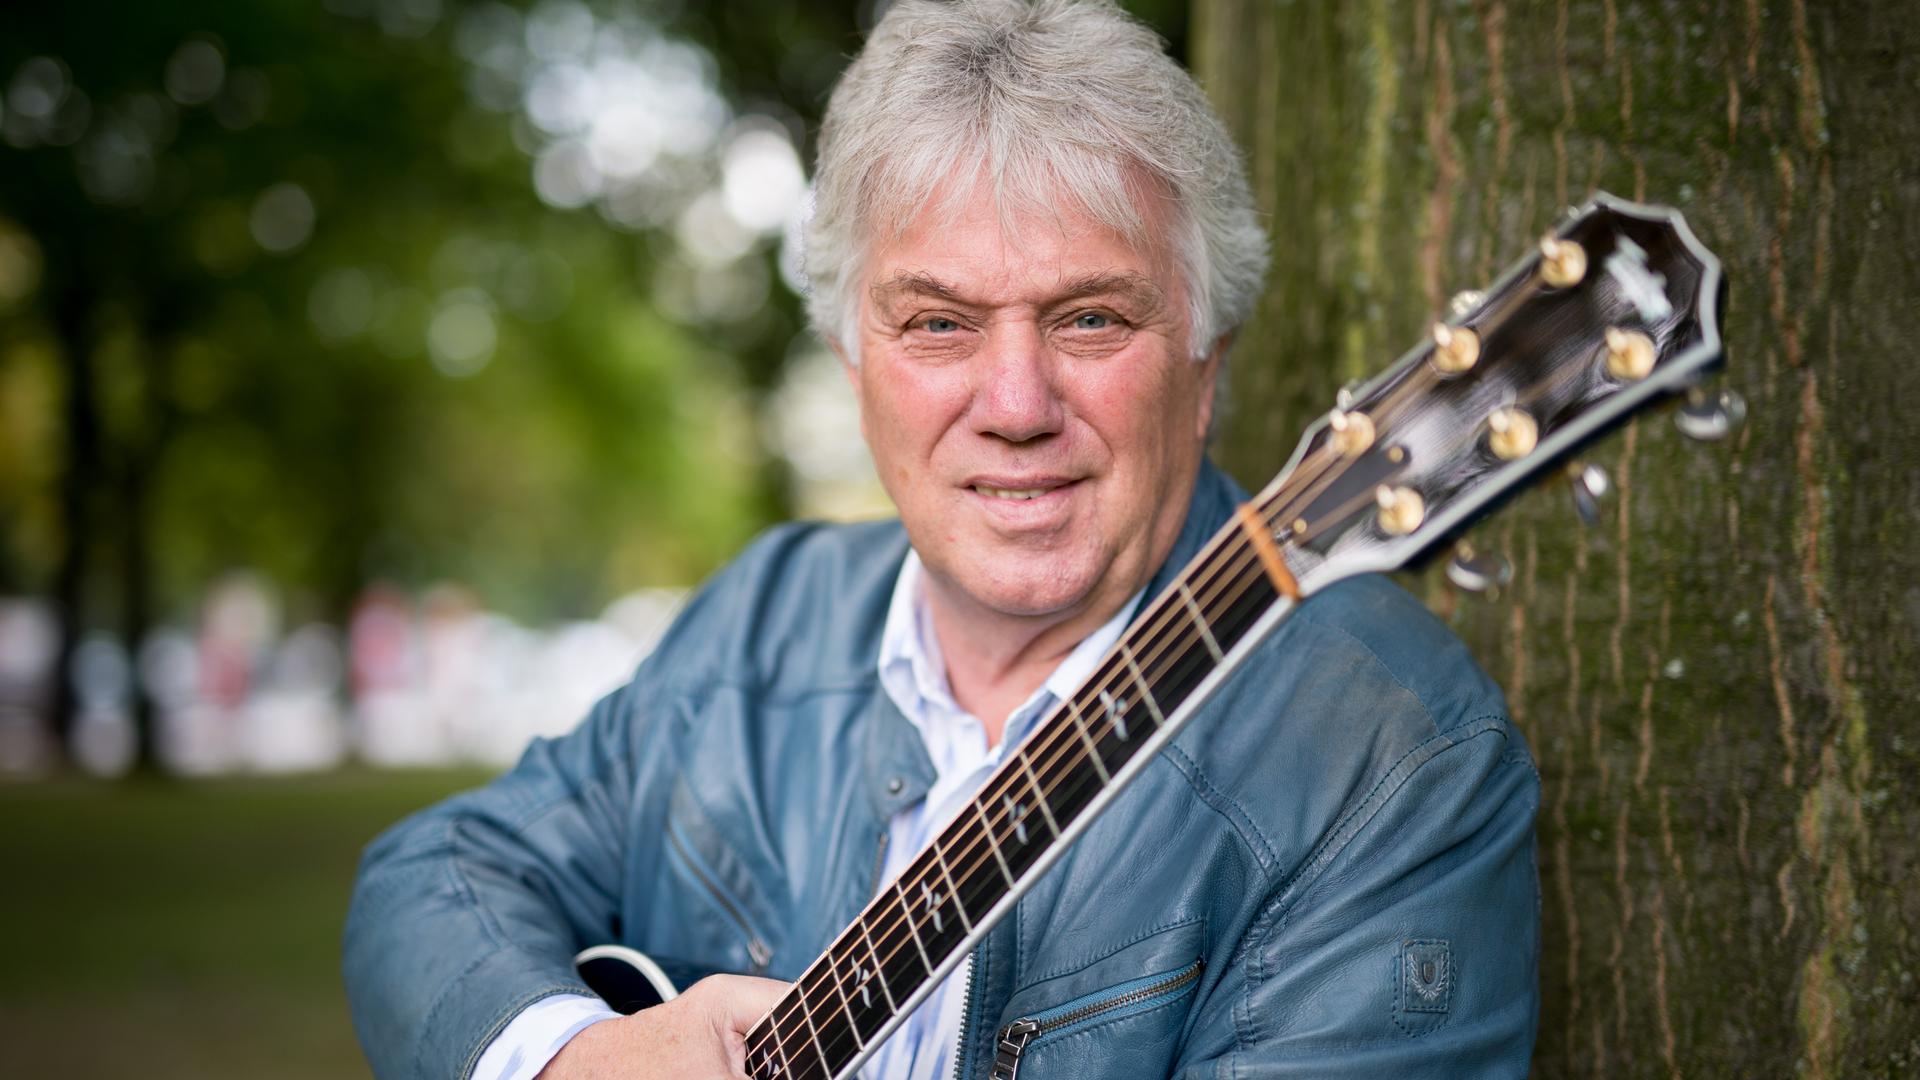 Der Musiker Rolf Zuckowski, mit weißem Haar, in hellgrauer Lederjacke, hält eine Gitarre in der rechten Hand und lehnt an einem Baum.